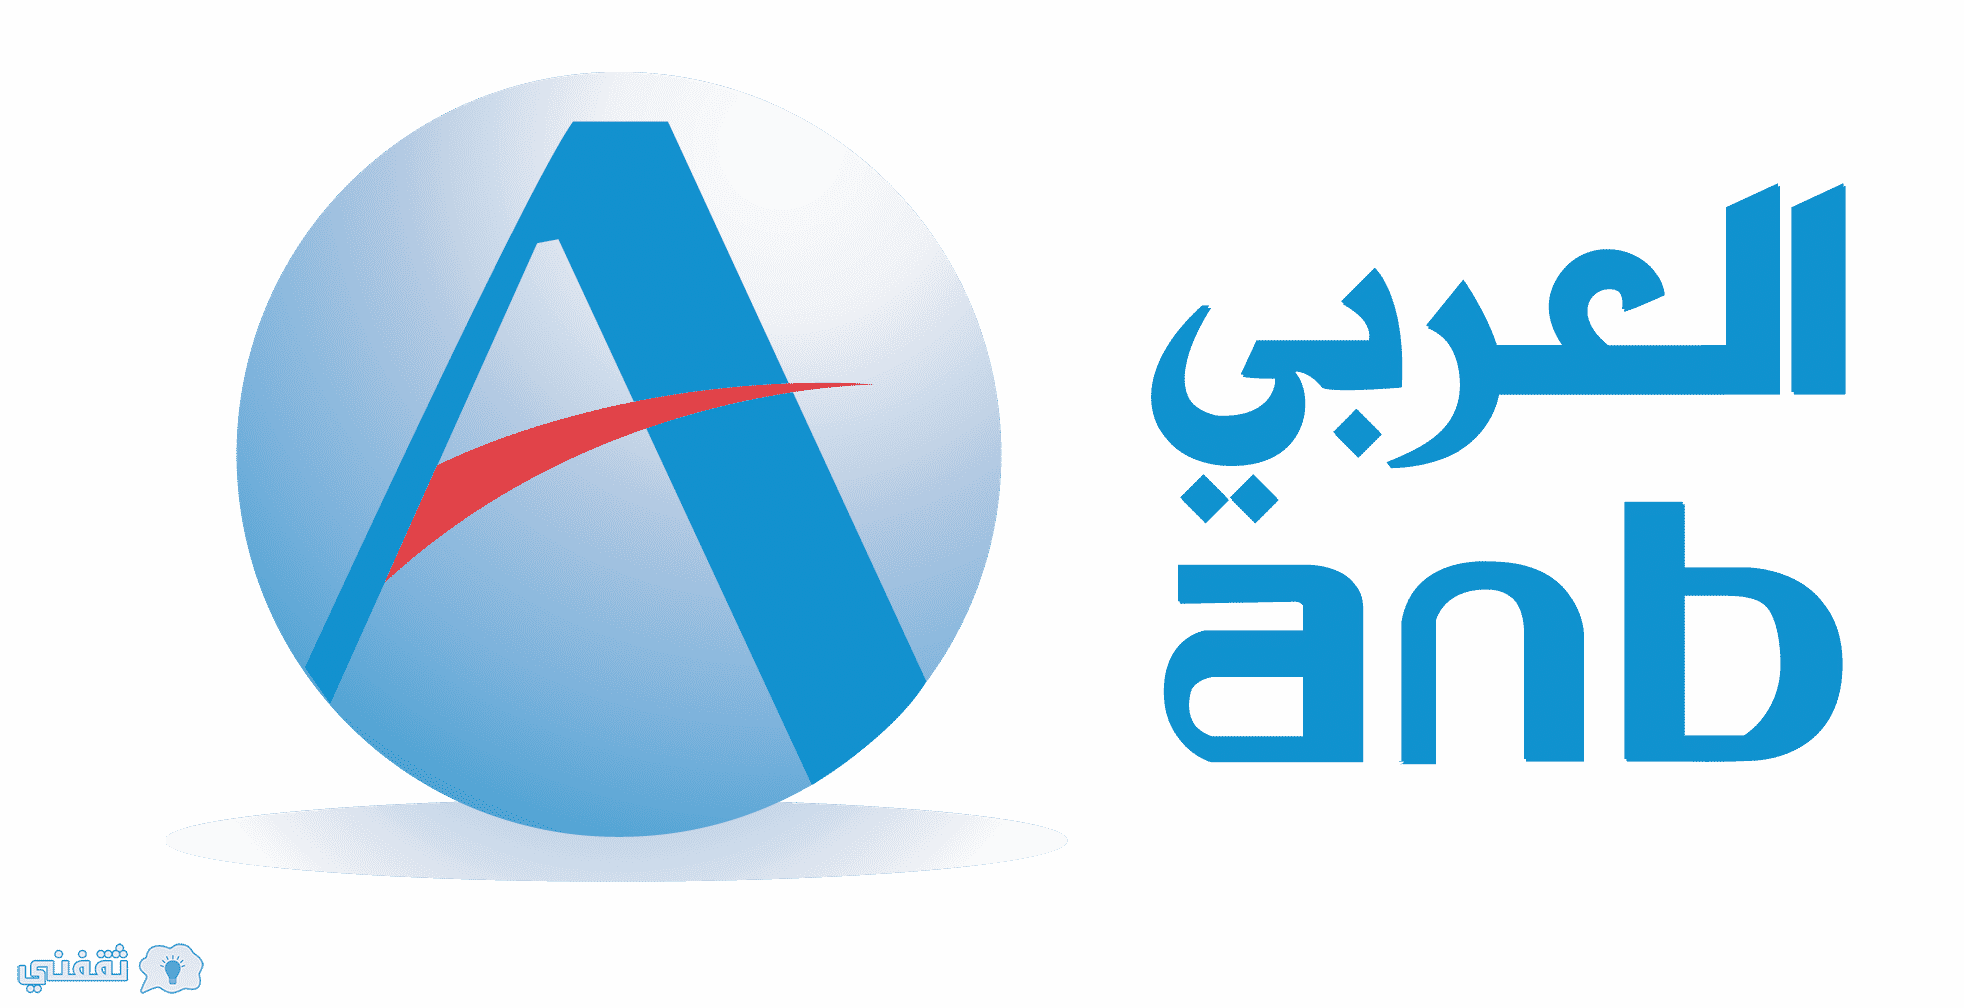 اعلان وظائف البنك العربي الوطني anb لذوي الاحتياجات الخاصة بالسعودية